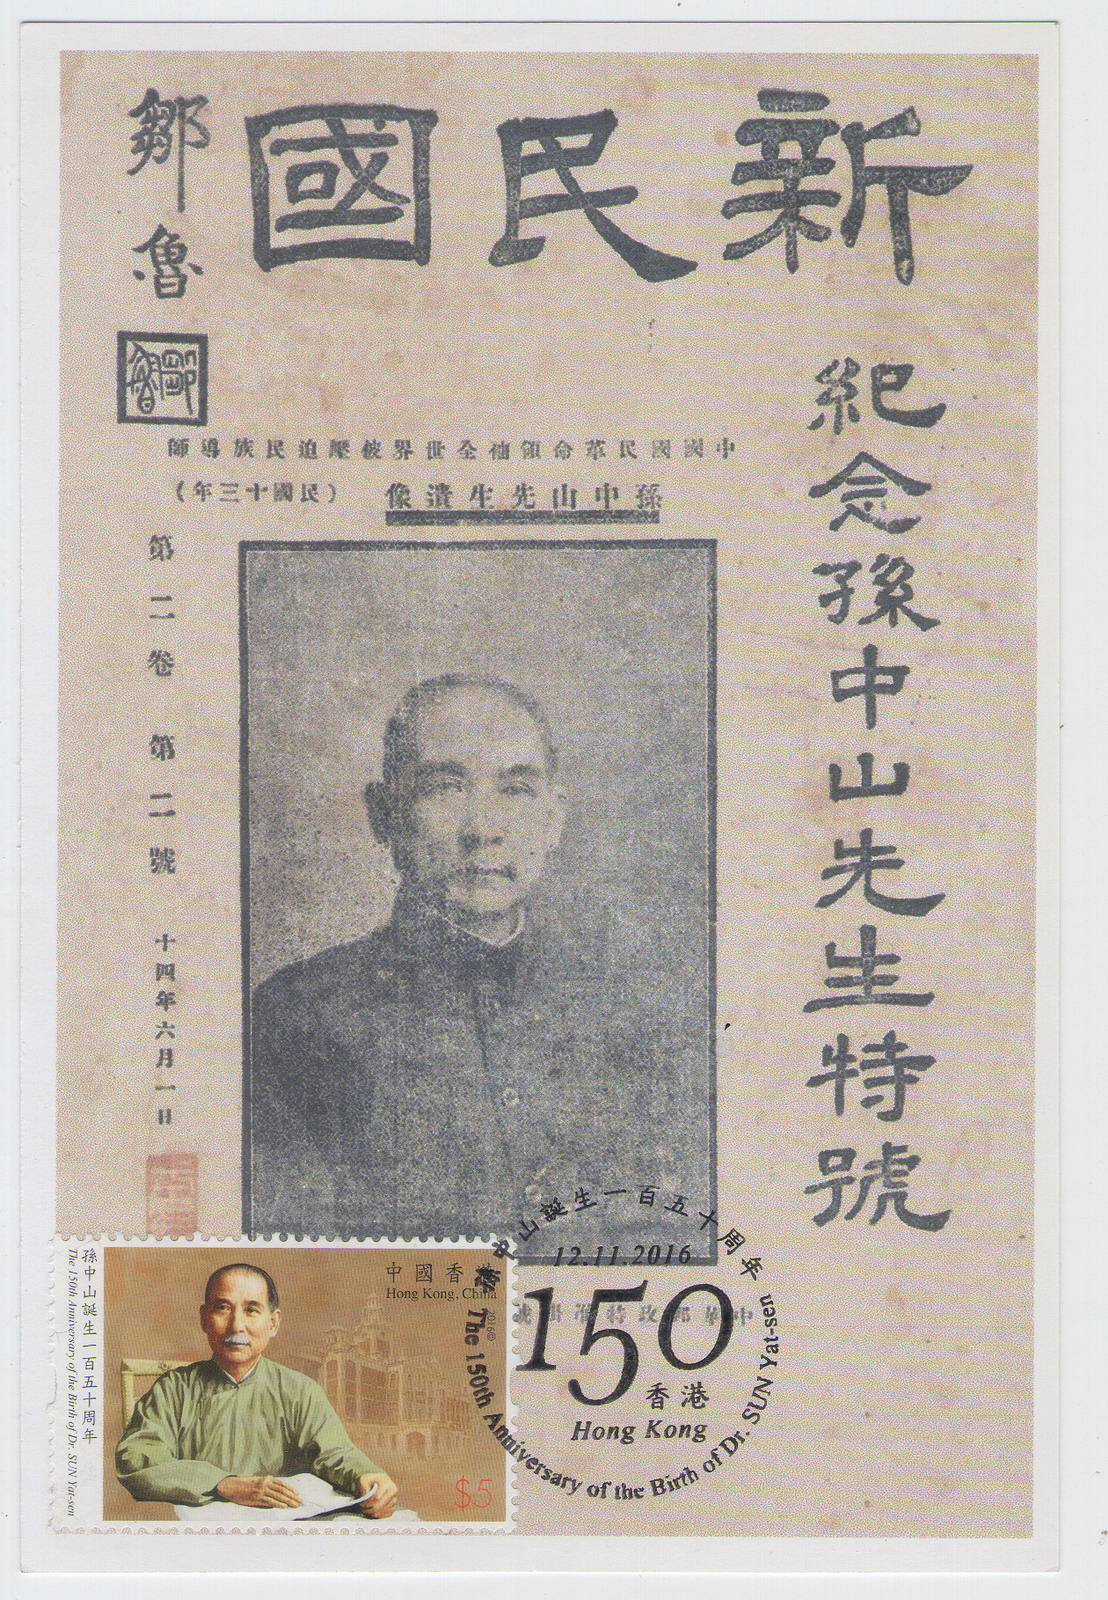 香港孙中山诞生150周年纪念-极限片-D4-A_resize.jpg